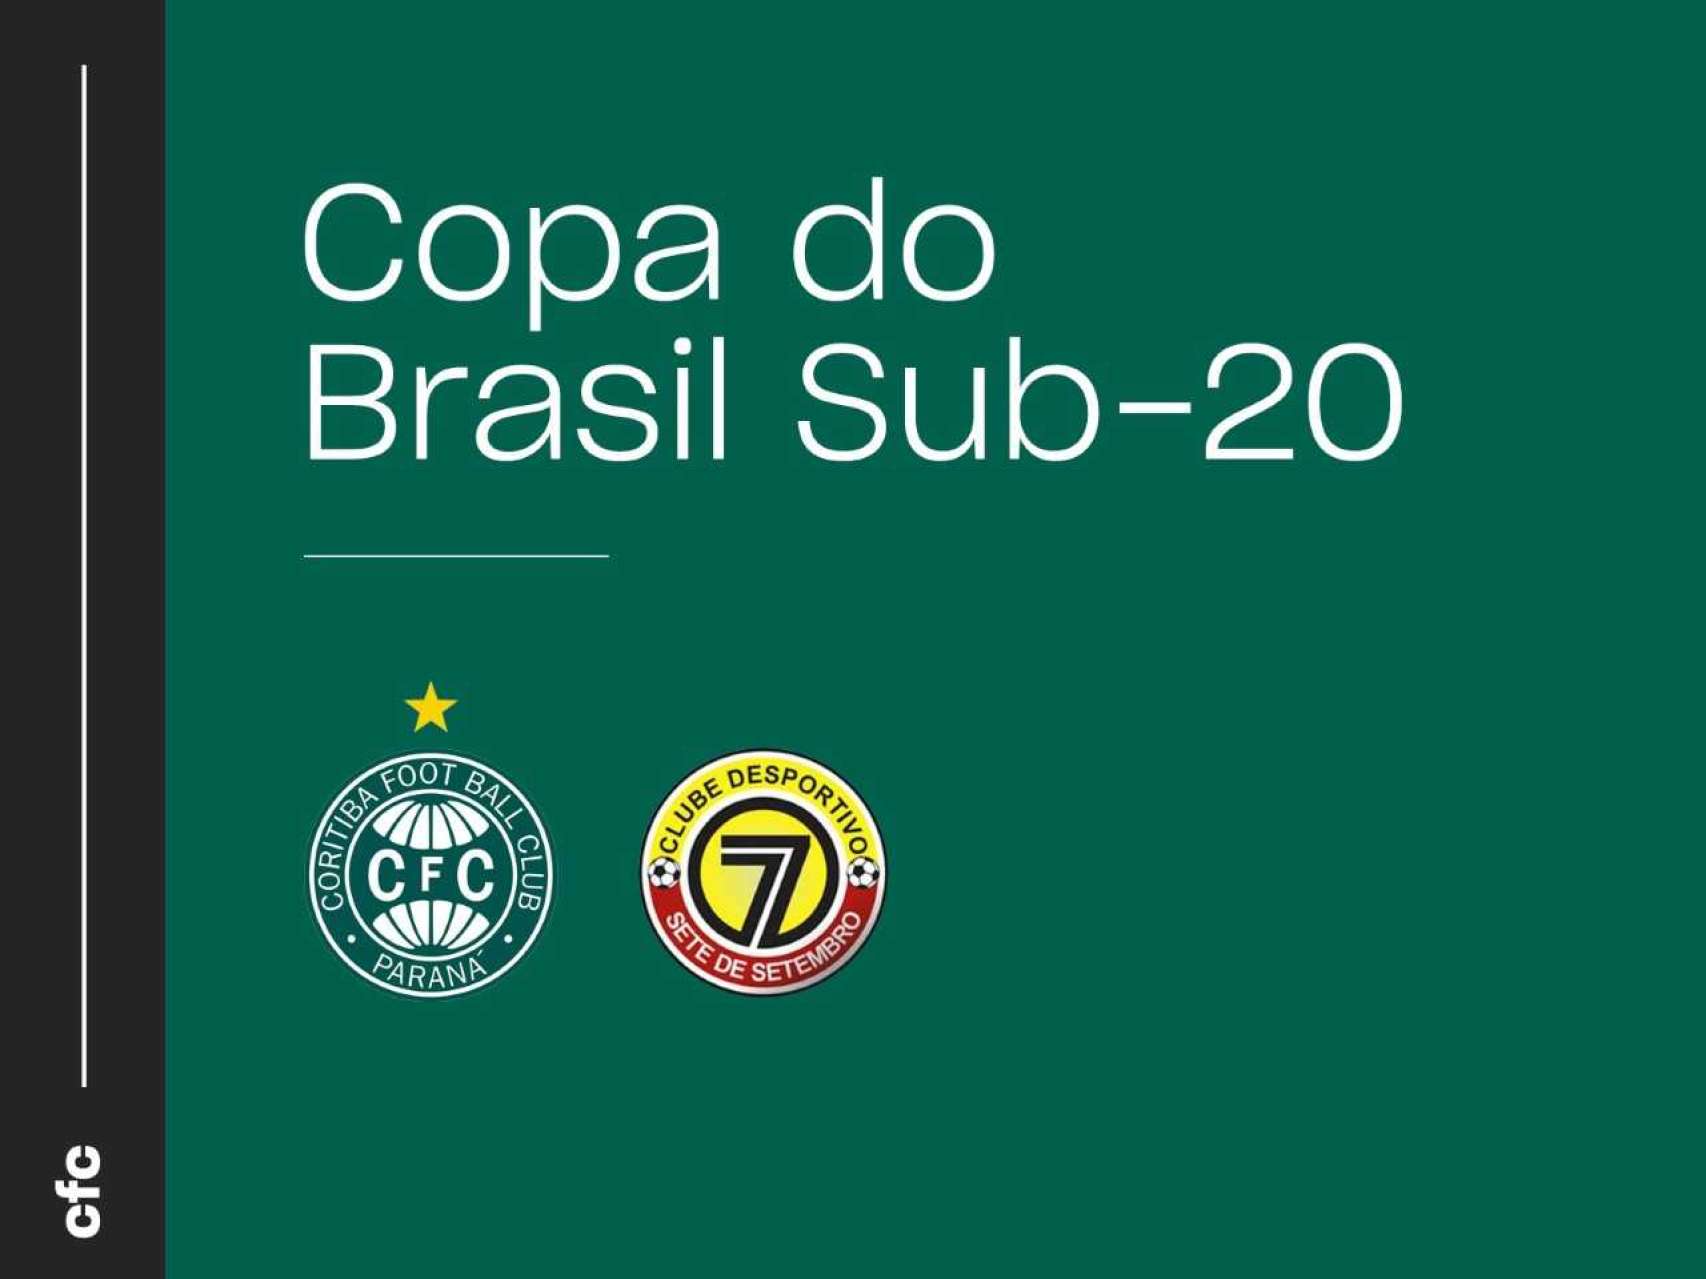 Ingressos para a Copa do Brasil Sub-20